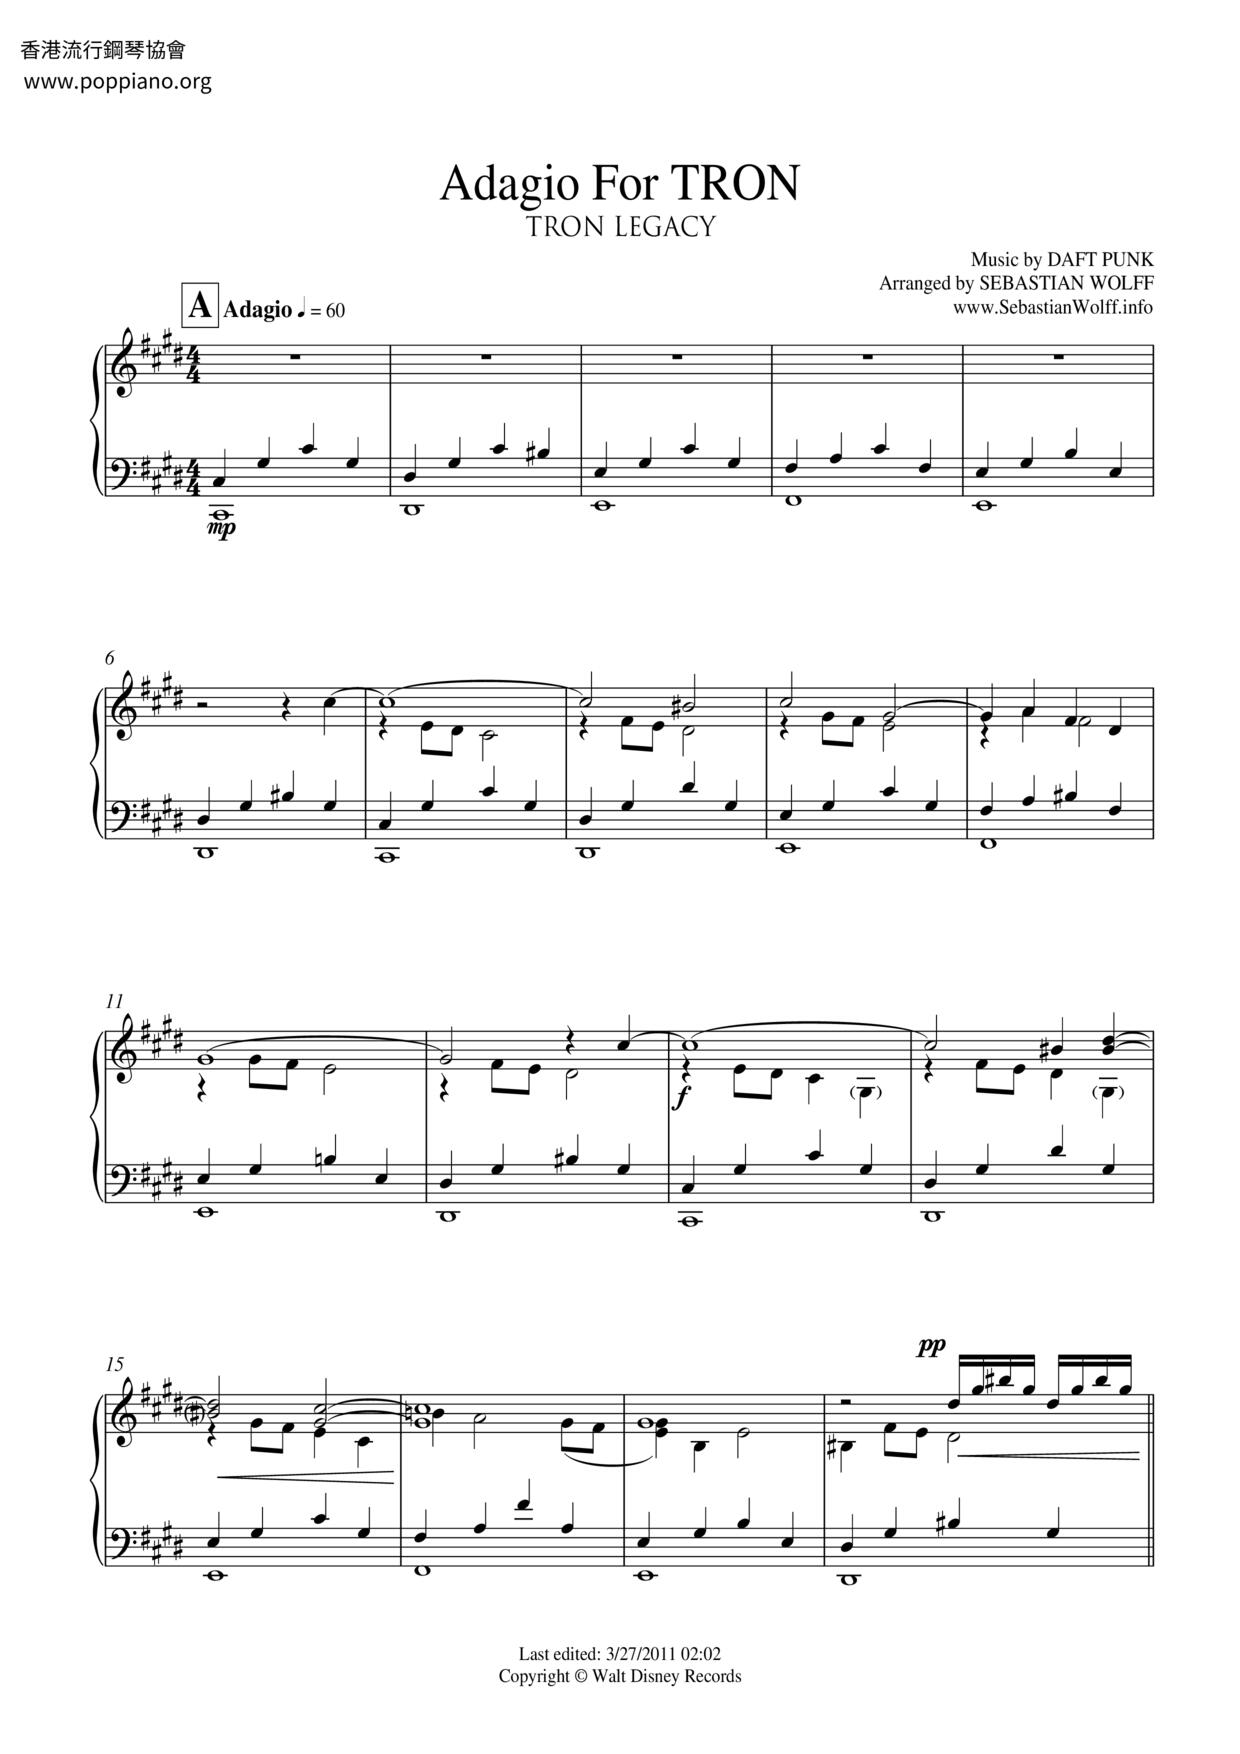 Adagio For TRON Score